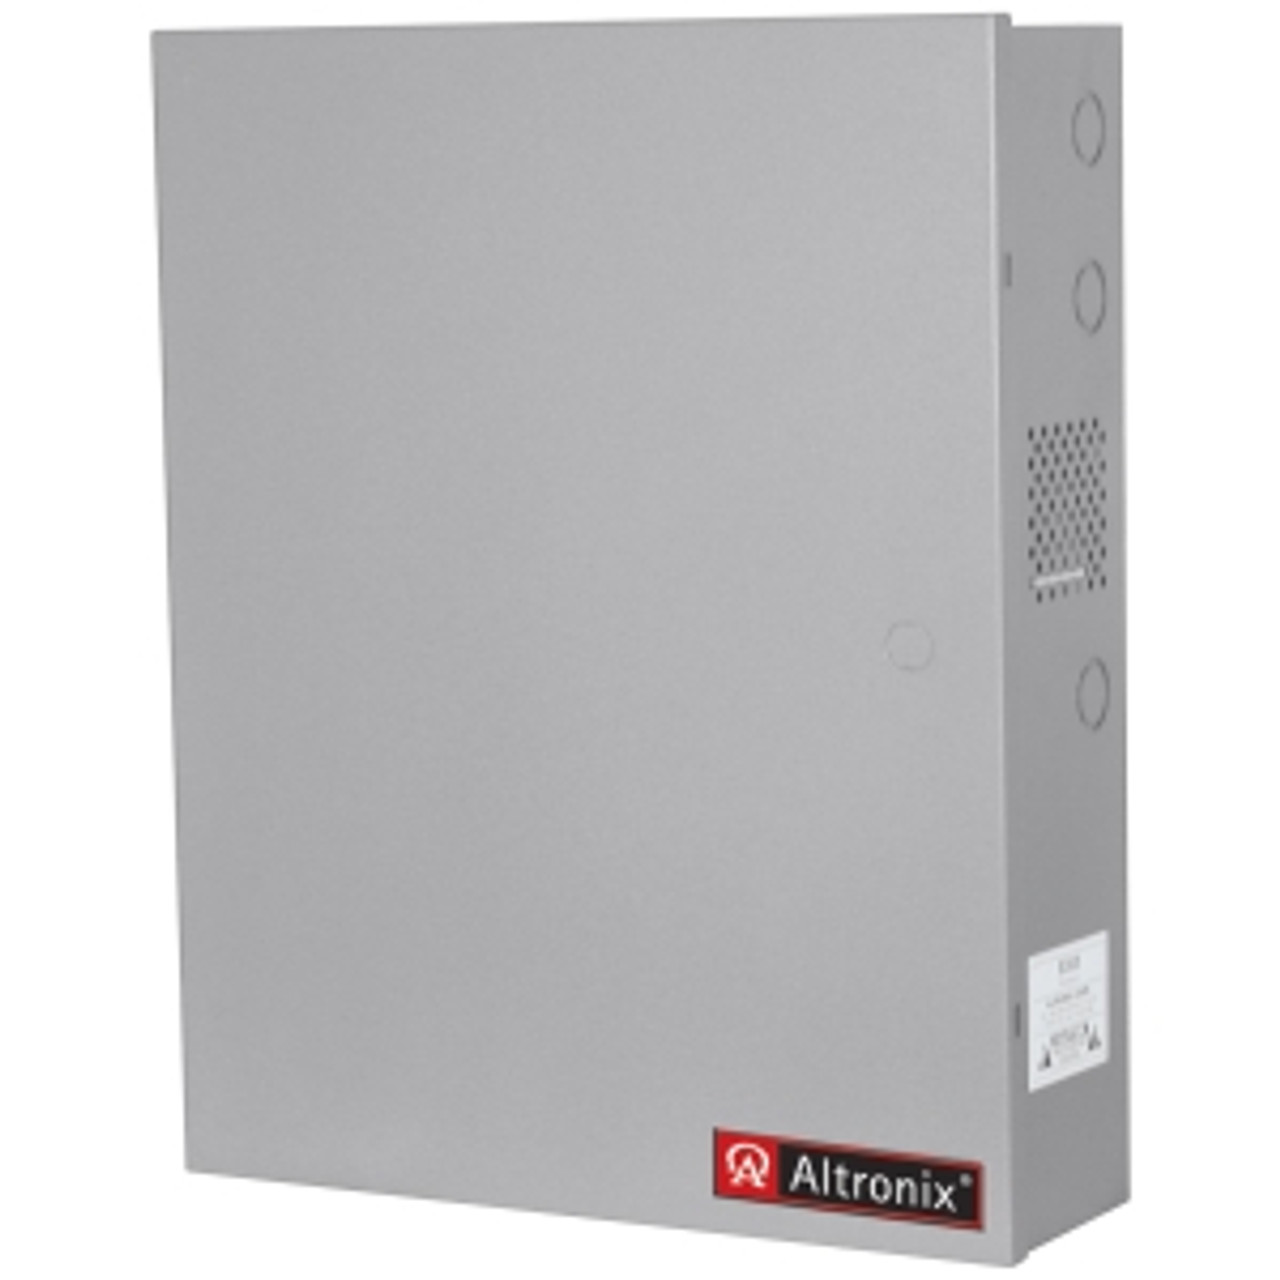 AL1024ULACMCBJ Altronix AL1024ULACMCBJ Proprietary Power Supply Wall Mount 110 V AC